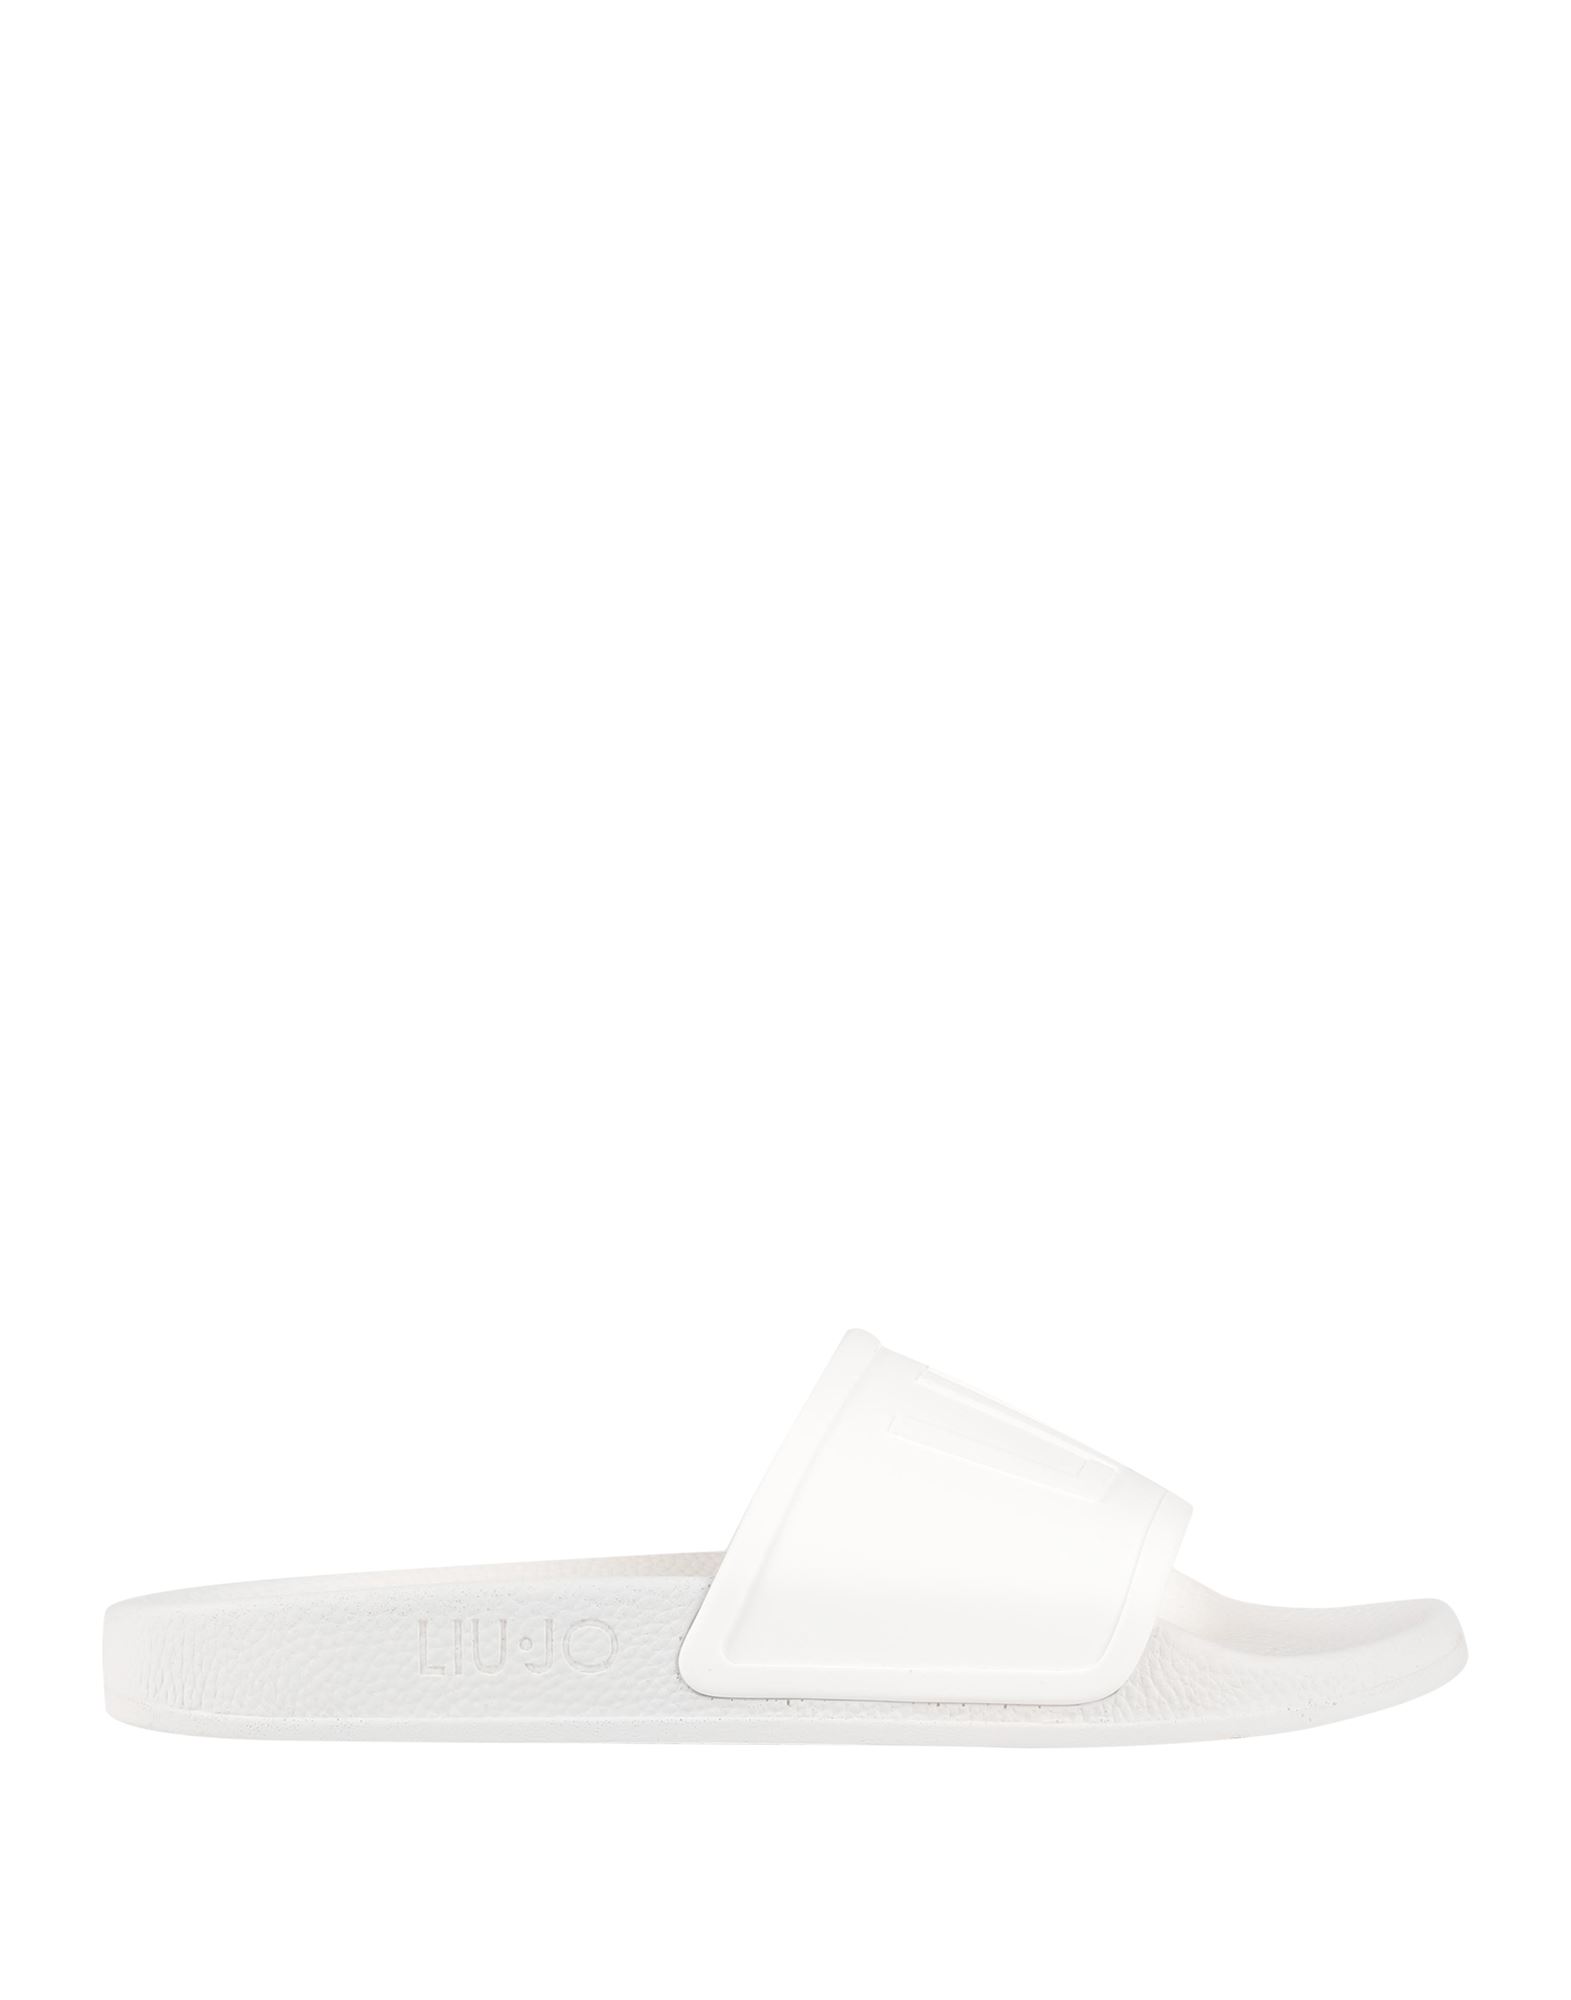 Liu •jo Sandals In White